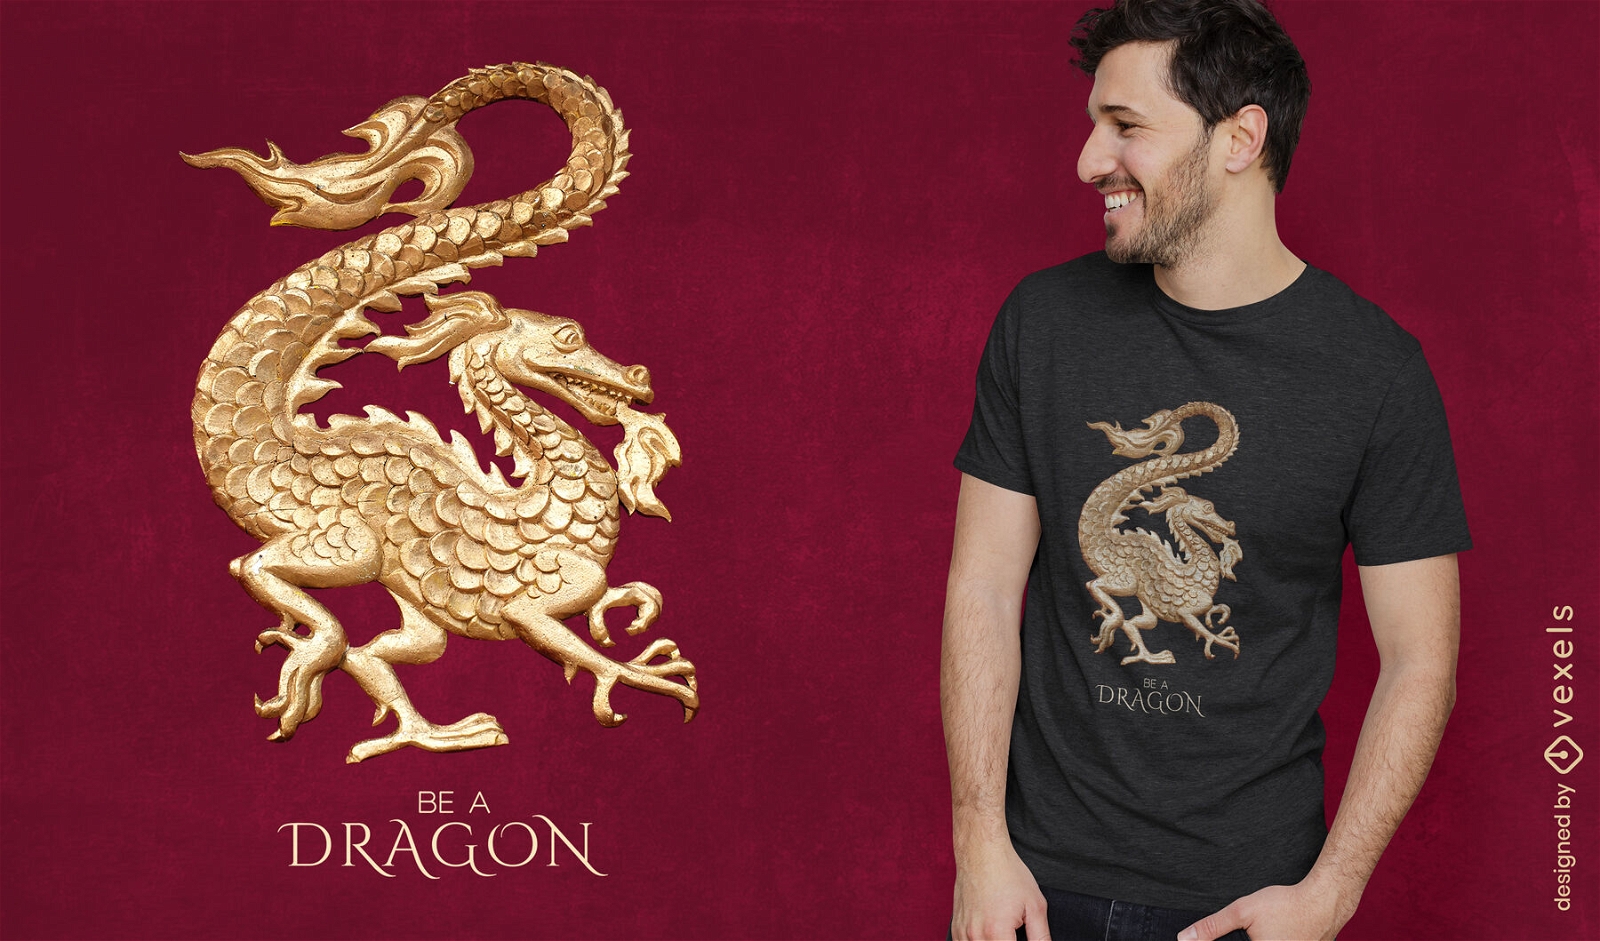 Dragon golden statue t-shirt design